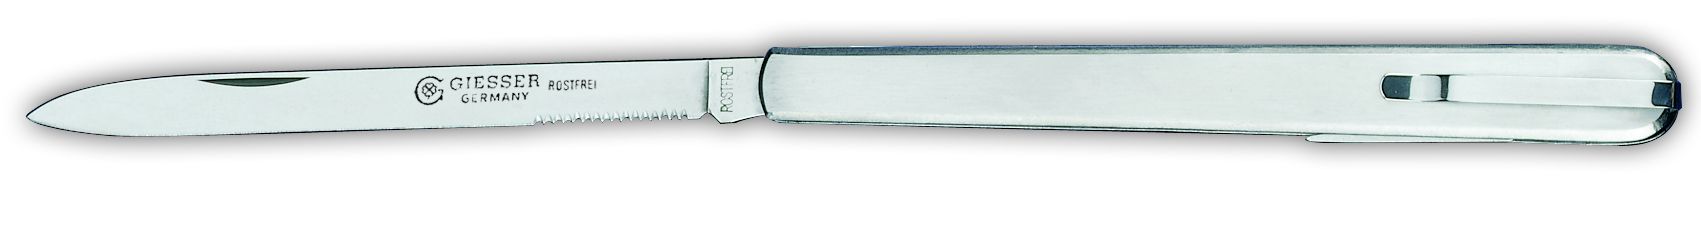 Нож технолога складной с клинком 11см, вилкой и клипсой 7984с , металлическая рукоятка